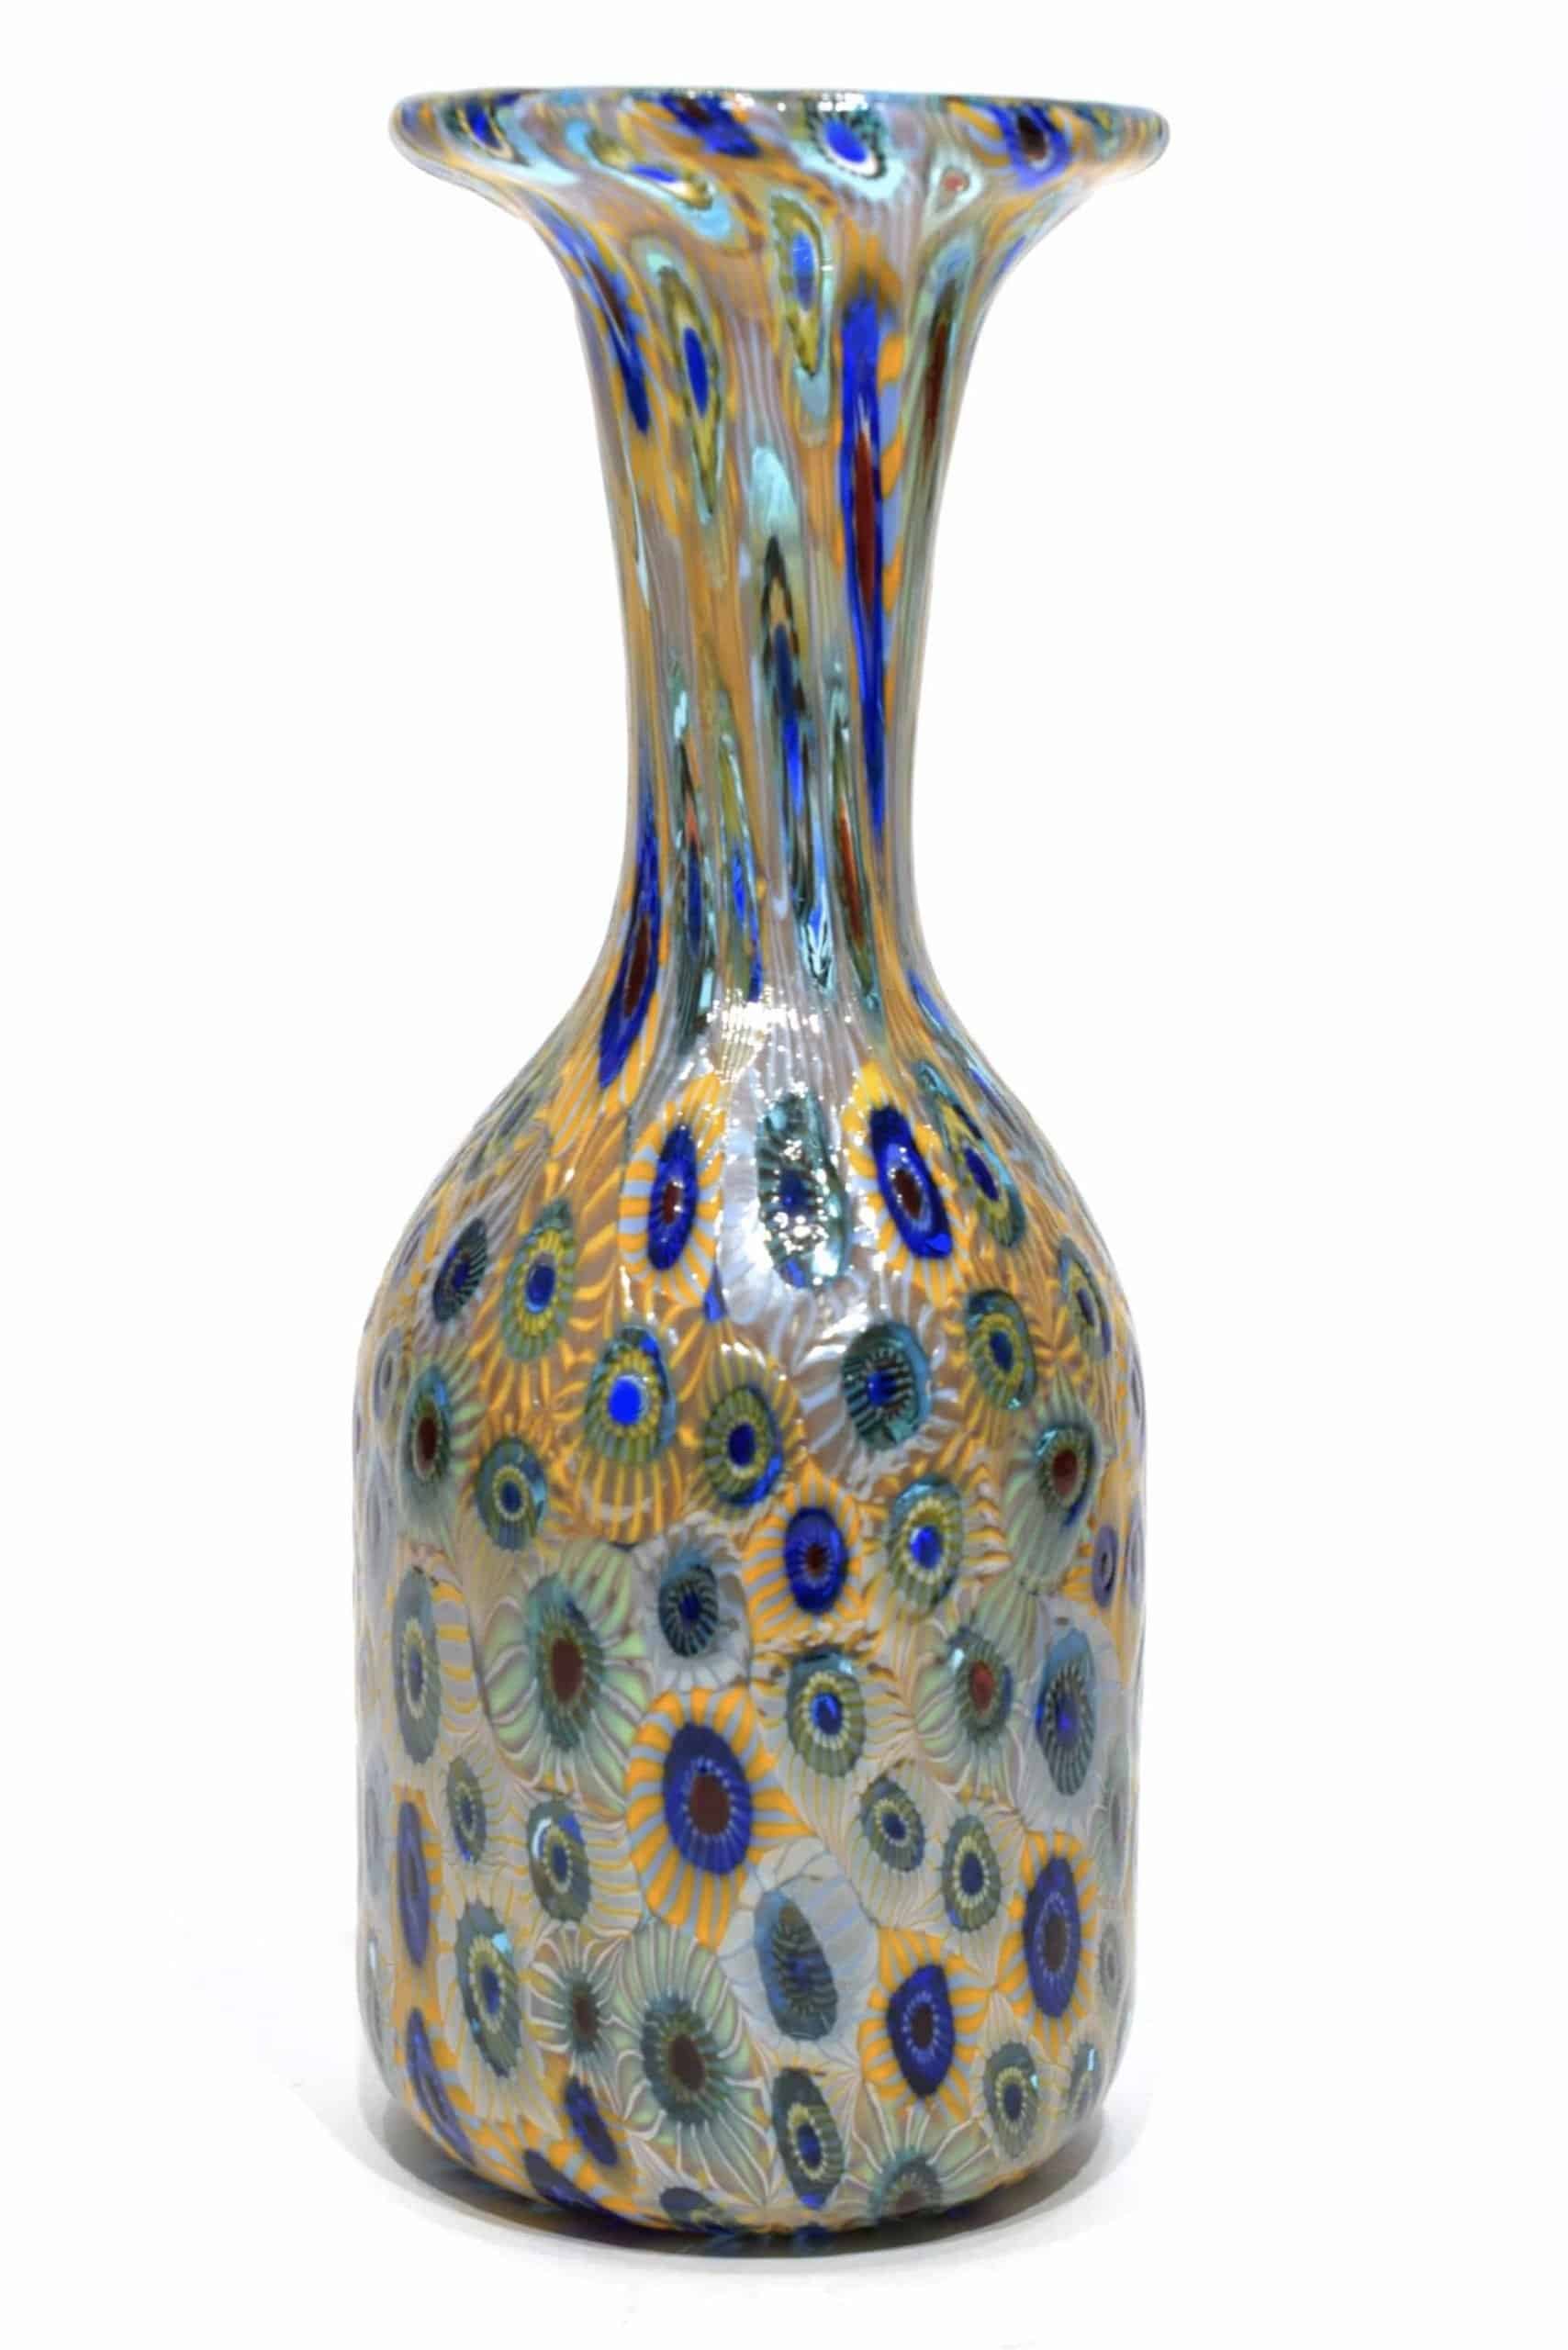 Murano glass vase with murrine